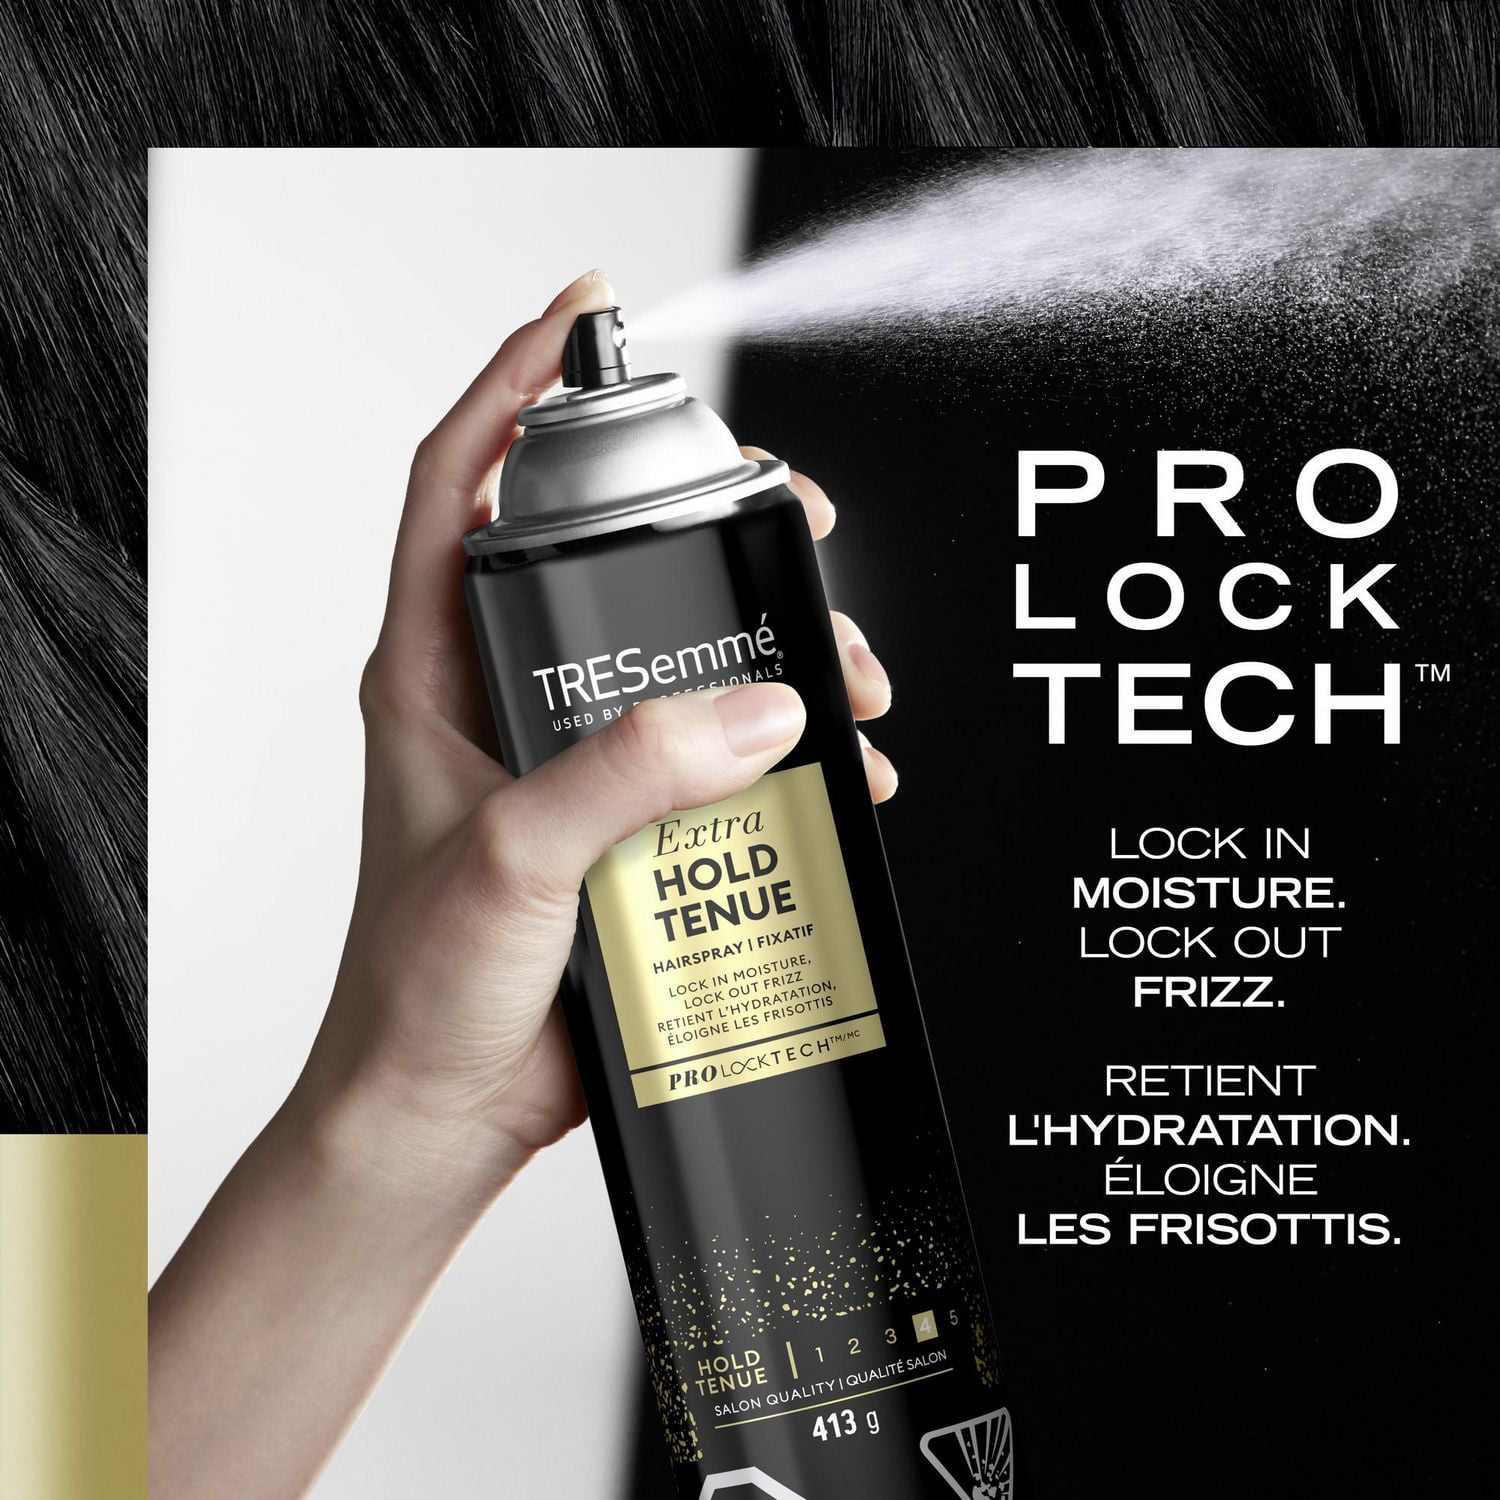 TRESemmé Extra Hold for 24H frizz control Hairspray, 413 g Hair Spray 